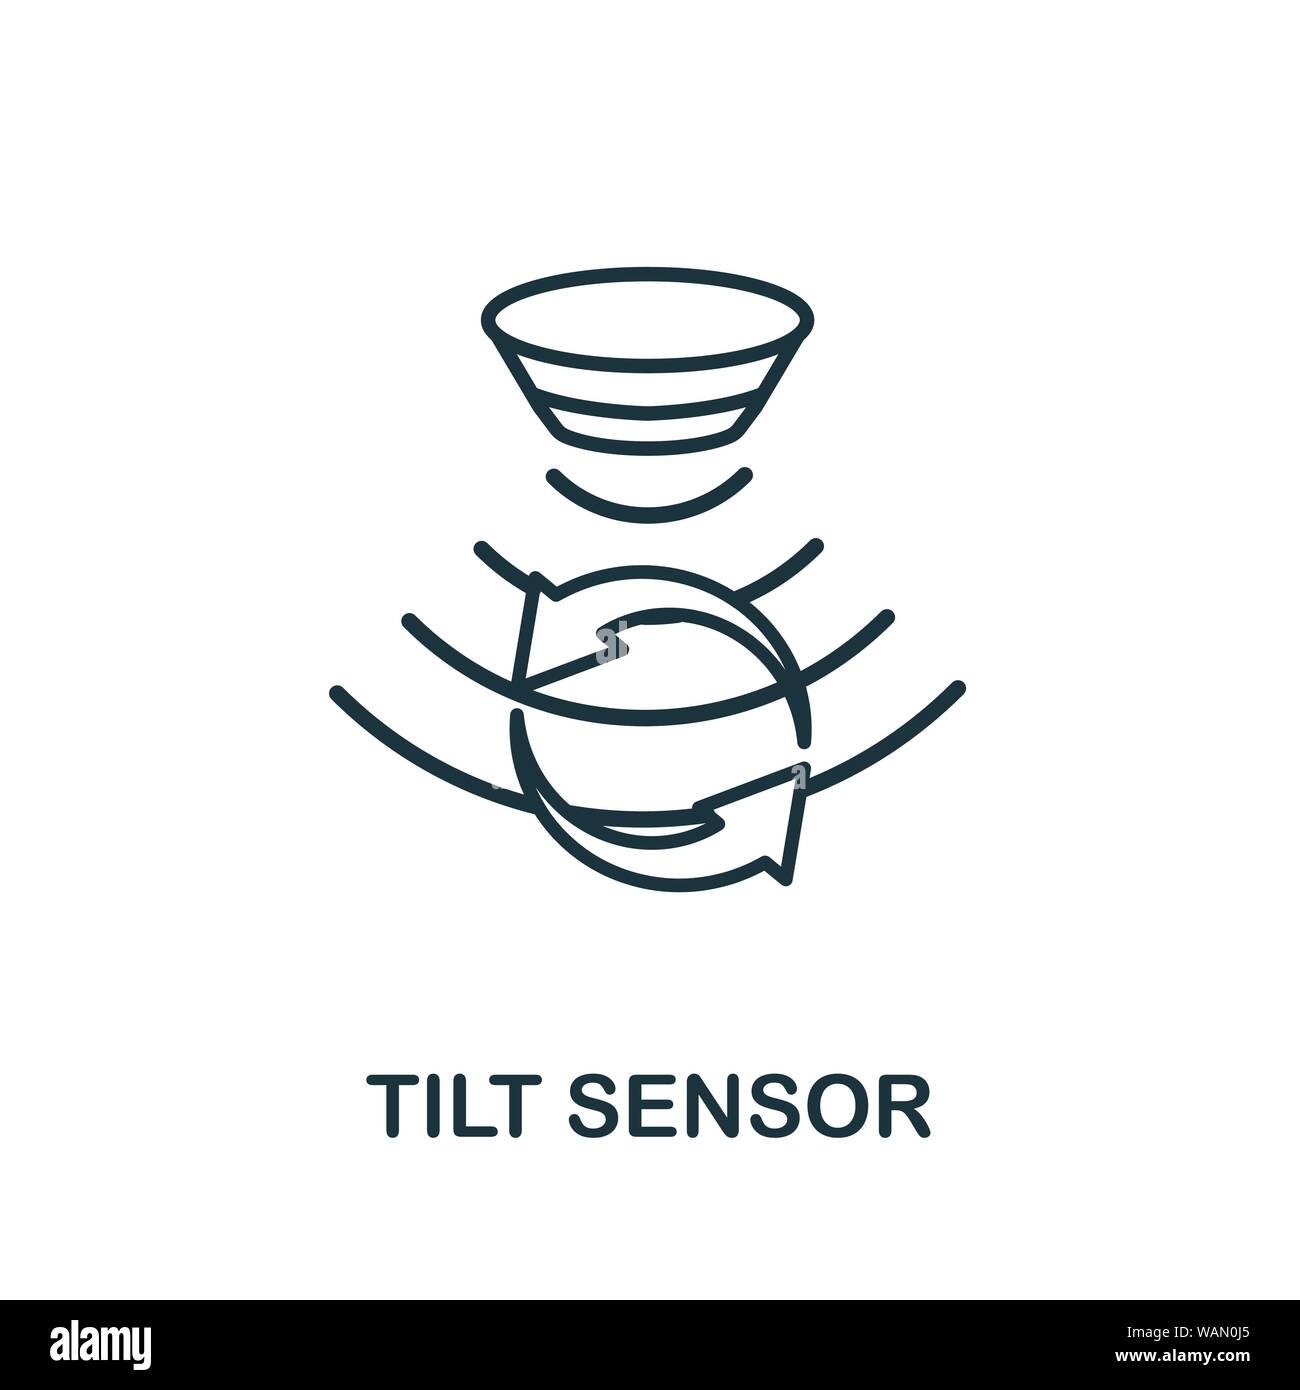 Tilt sensor Banque d'images vectorielles - Alamy